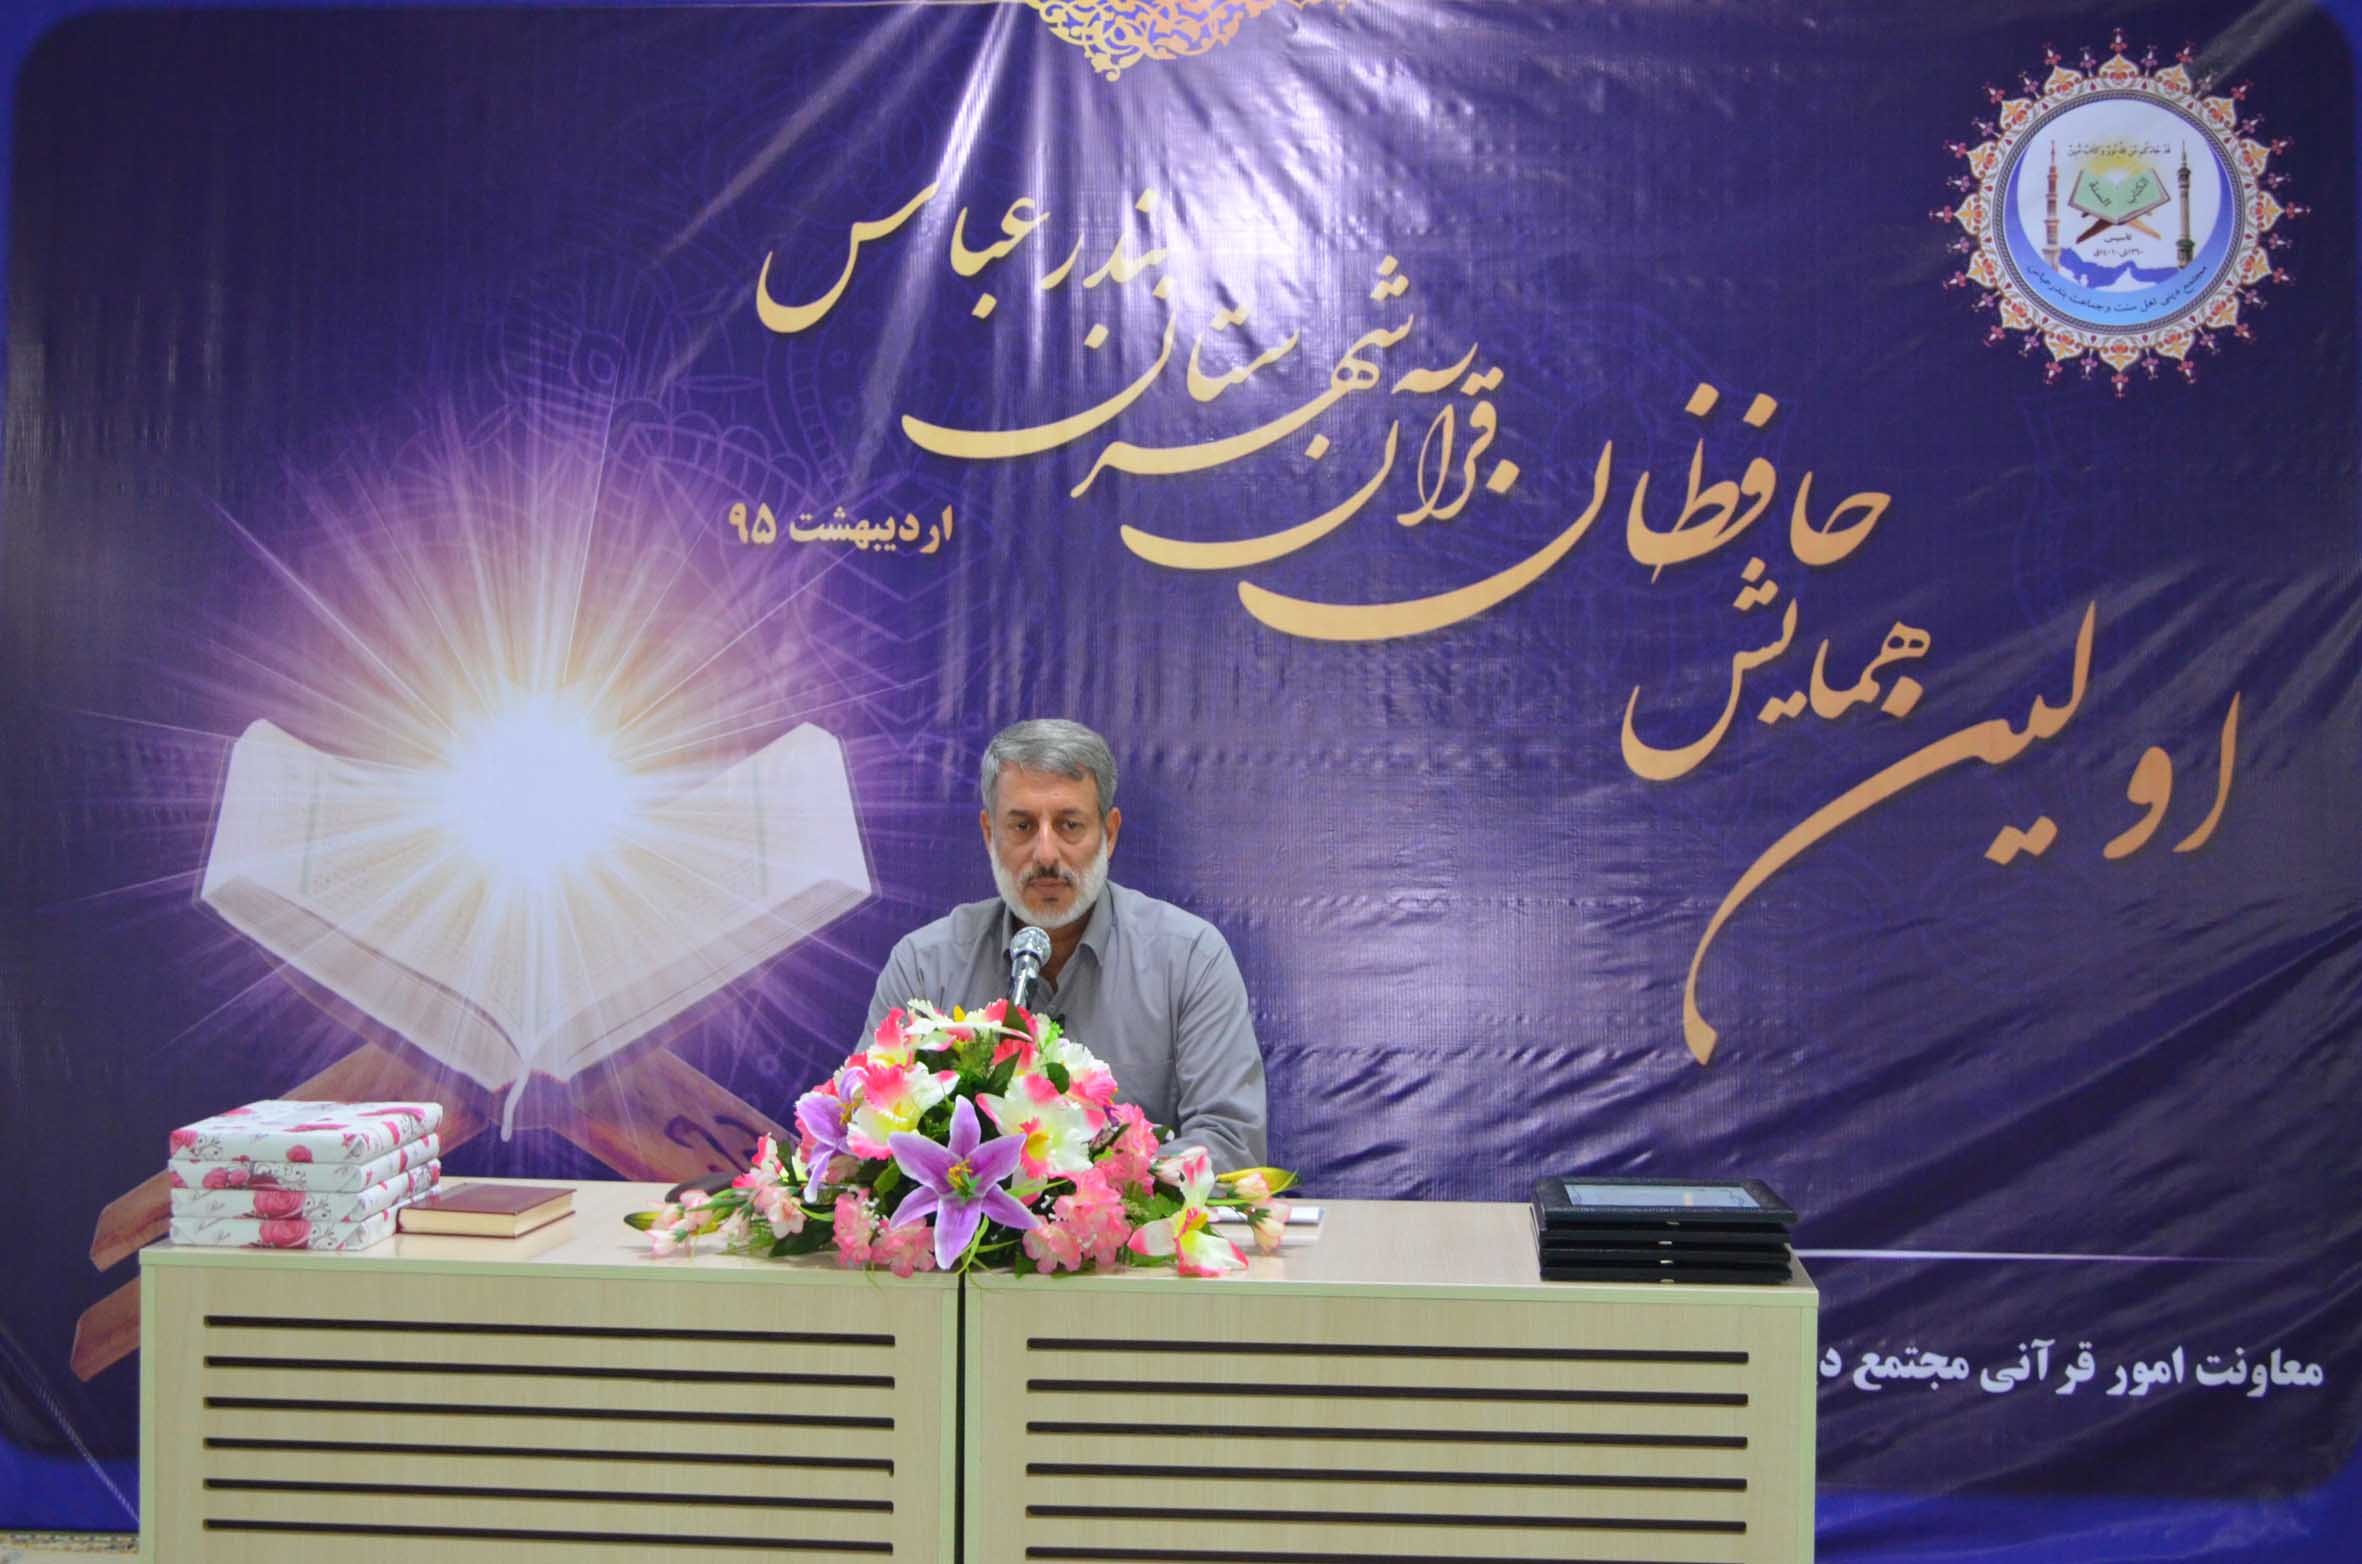 اولین همایش حافظان قرآن شهرستان بندرعباس - شیخ محمد صالح پردل